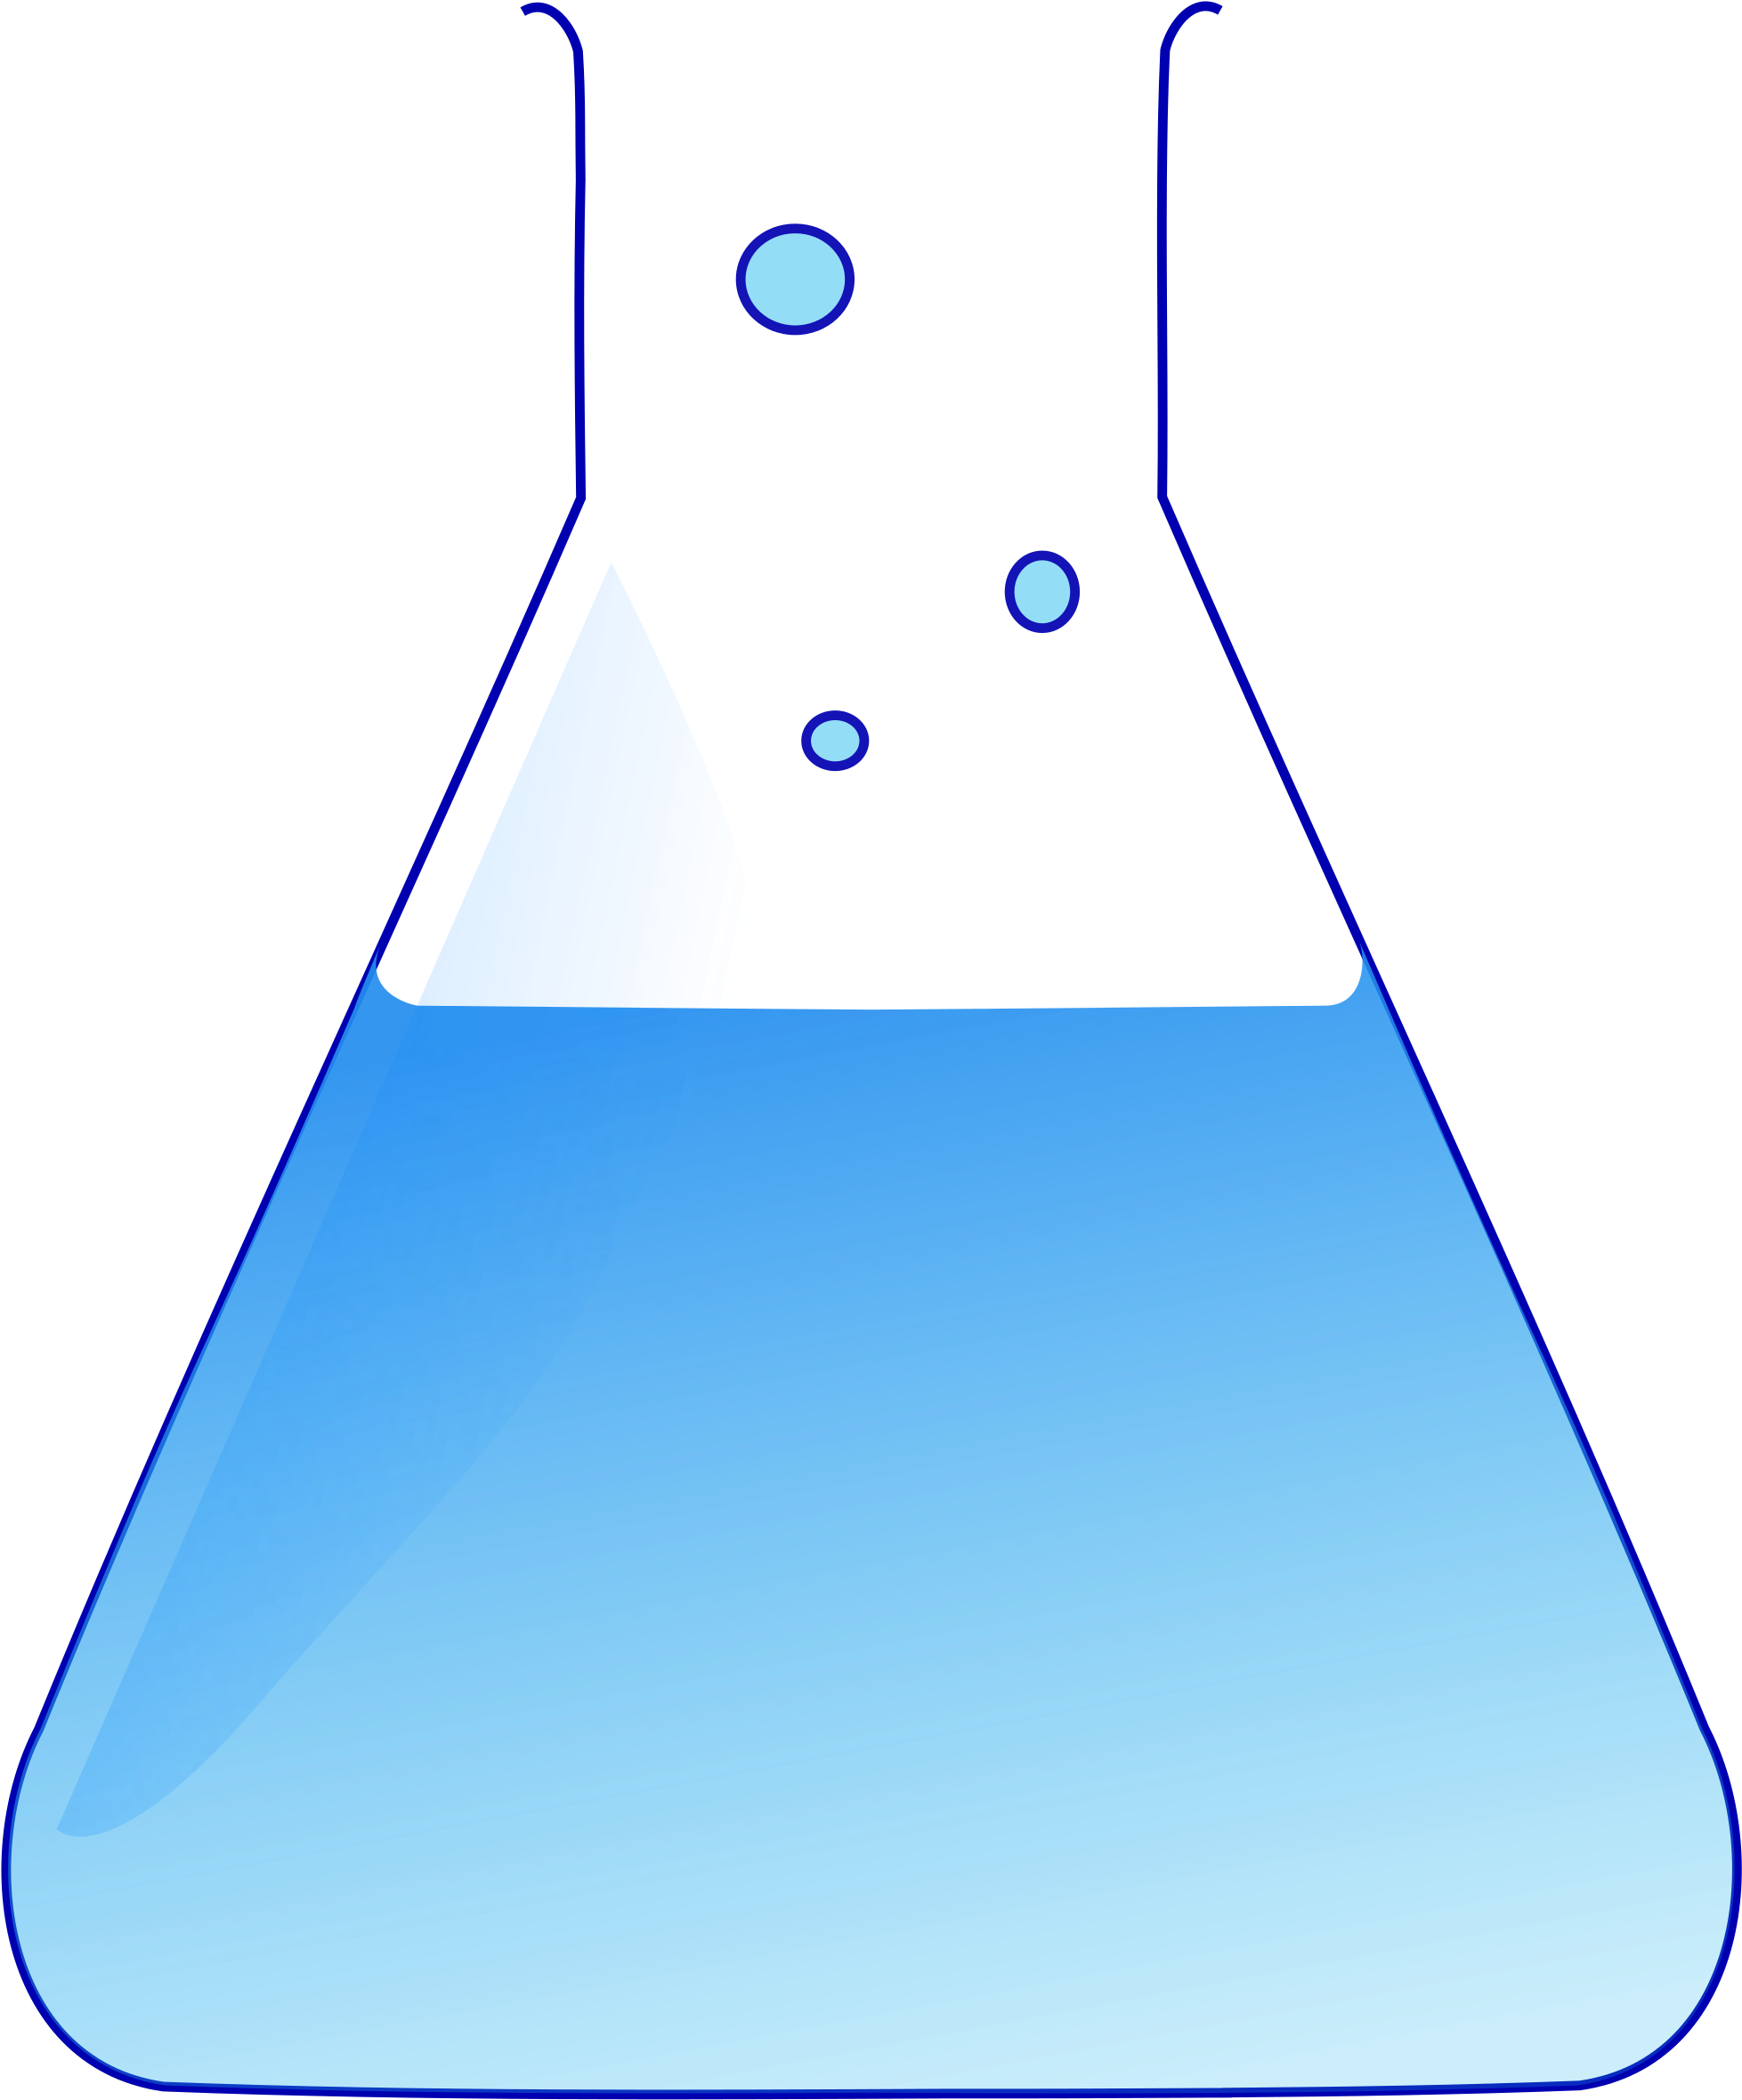 Химия без воды